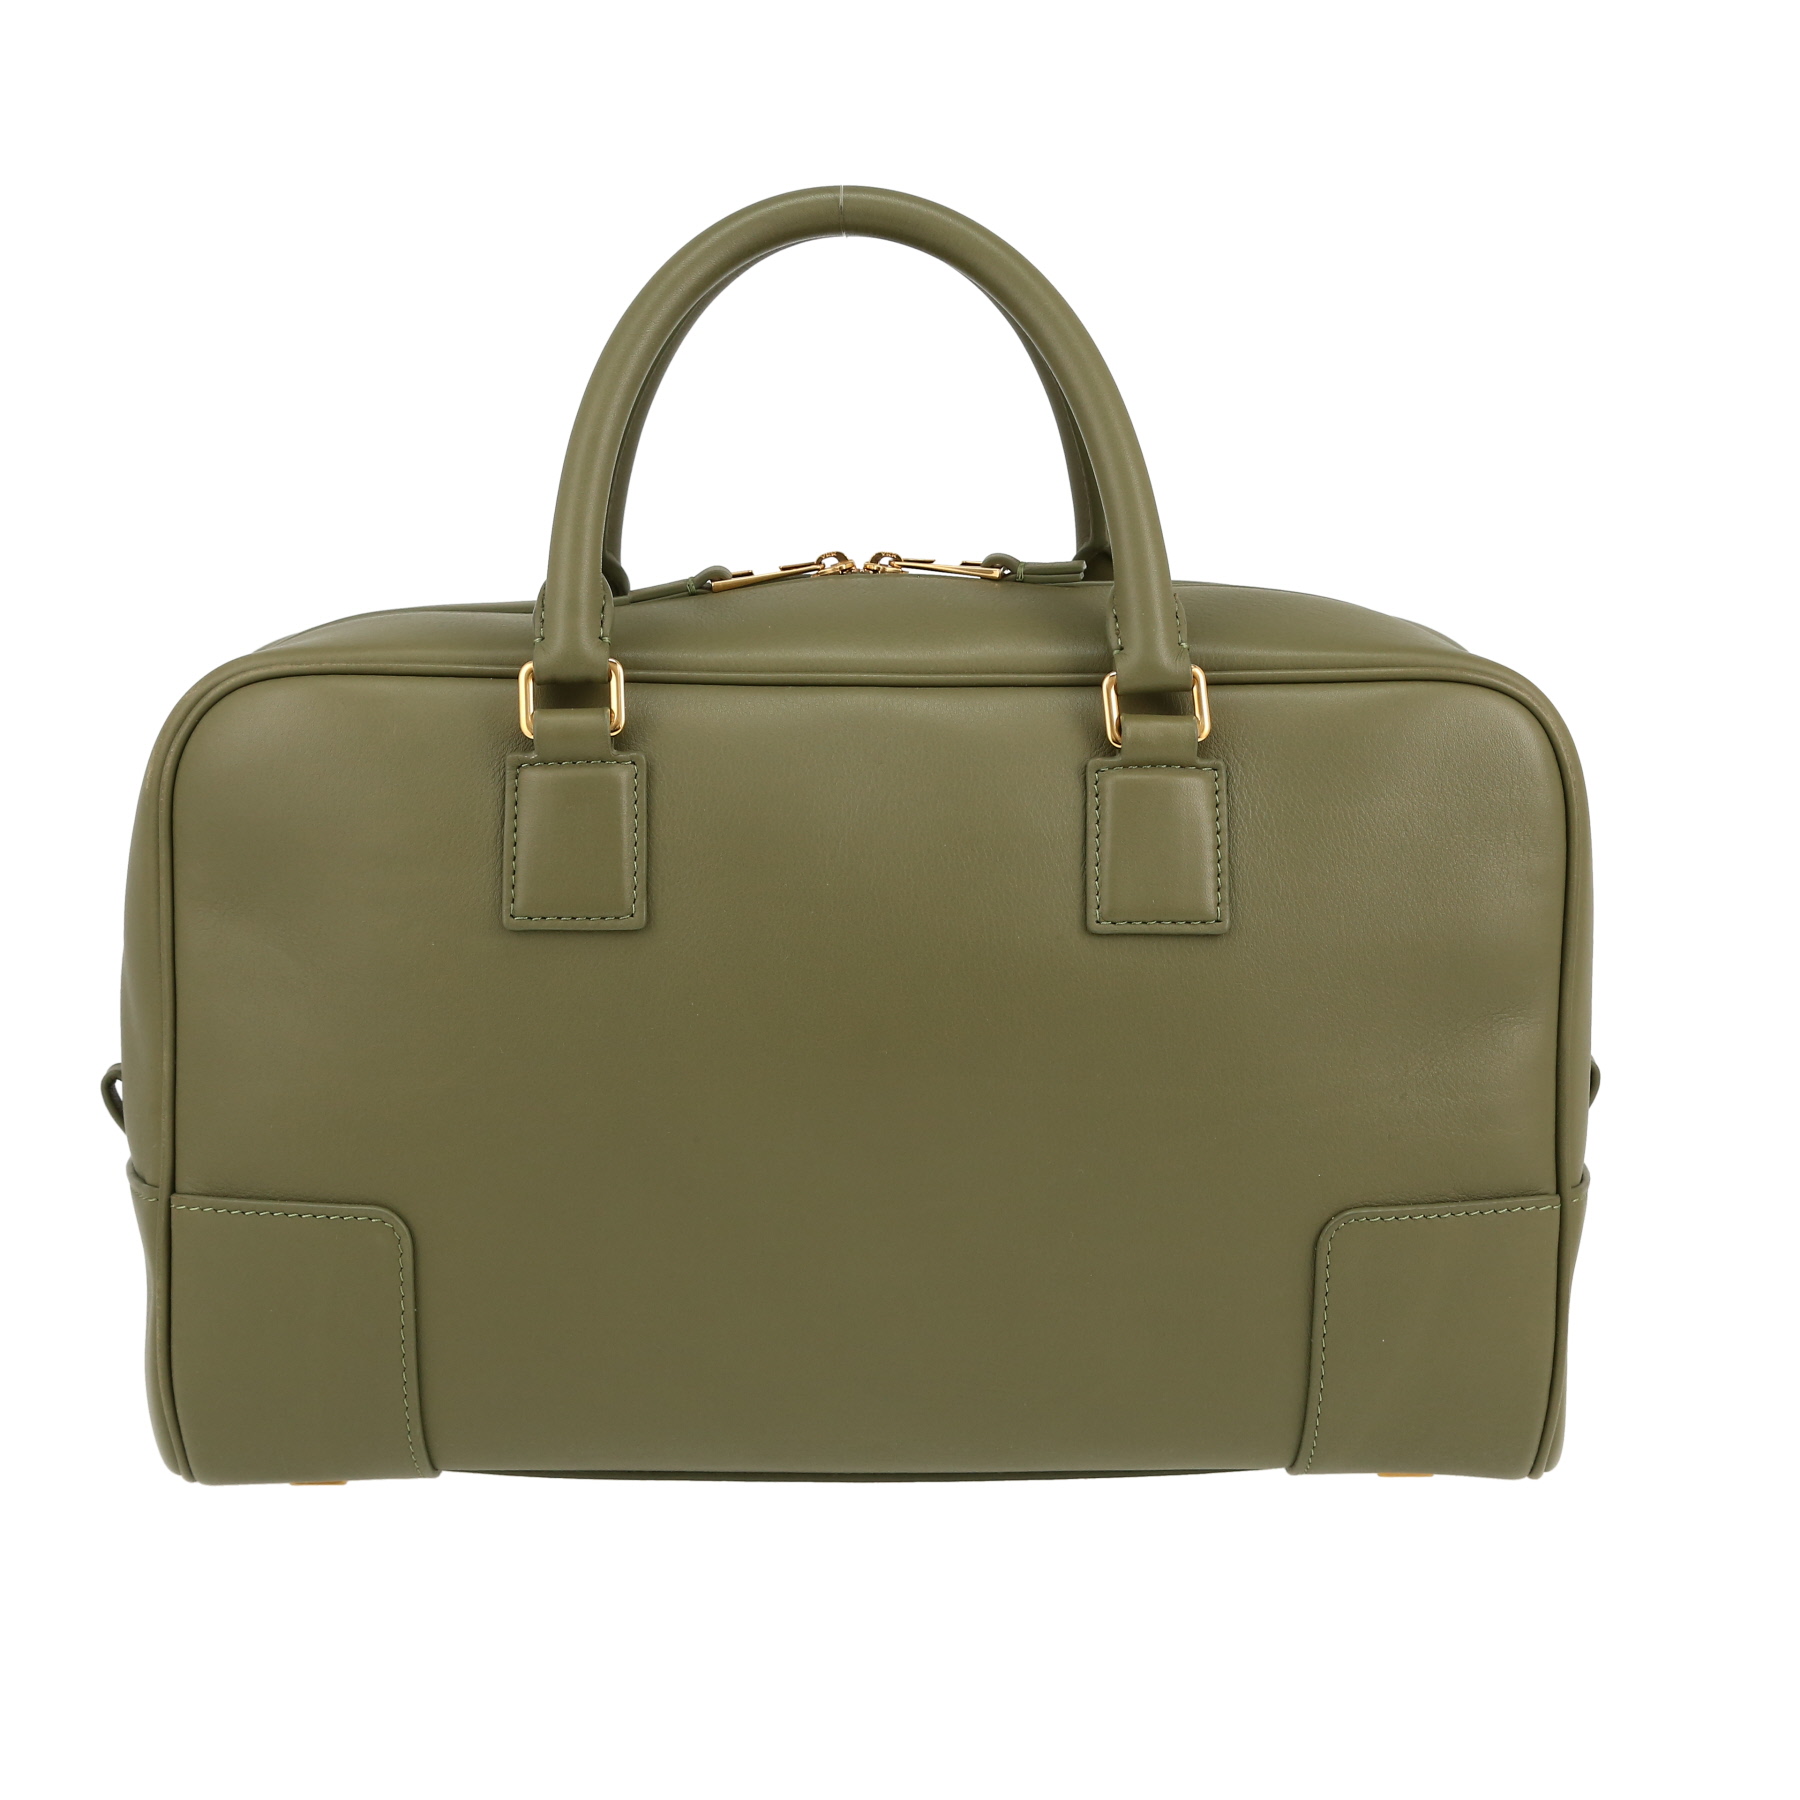 Amazona Handbag In Leather